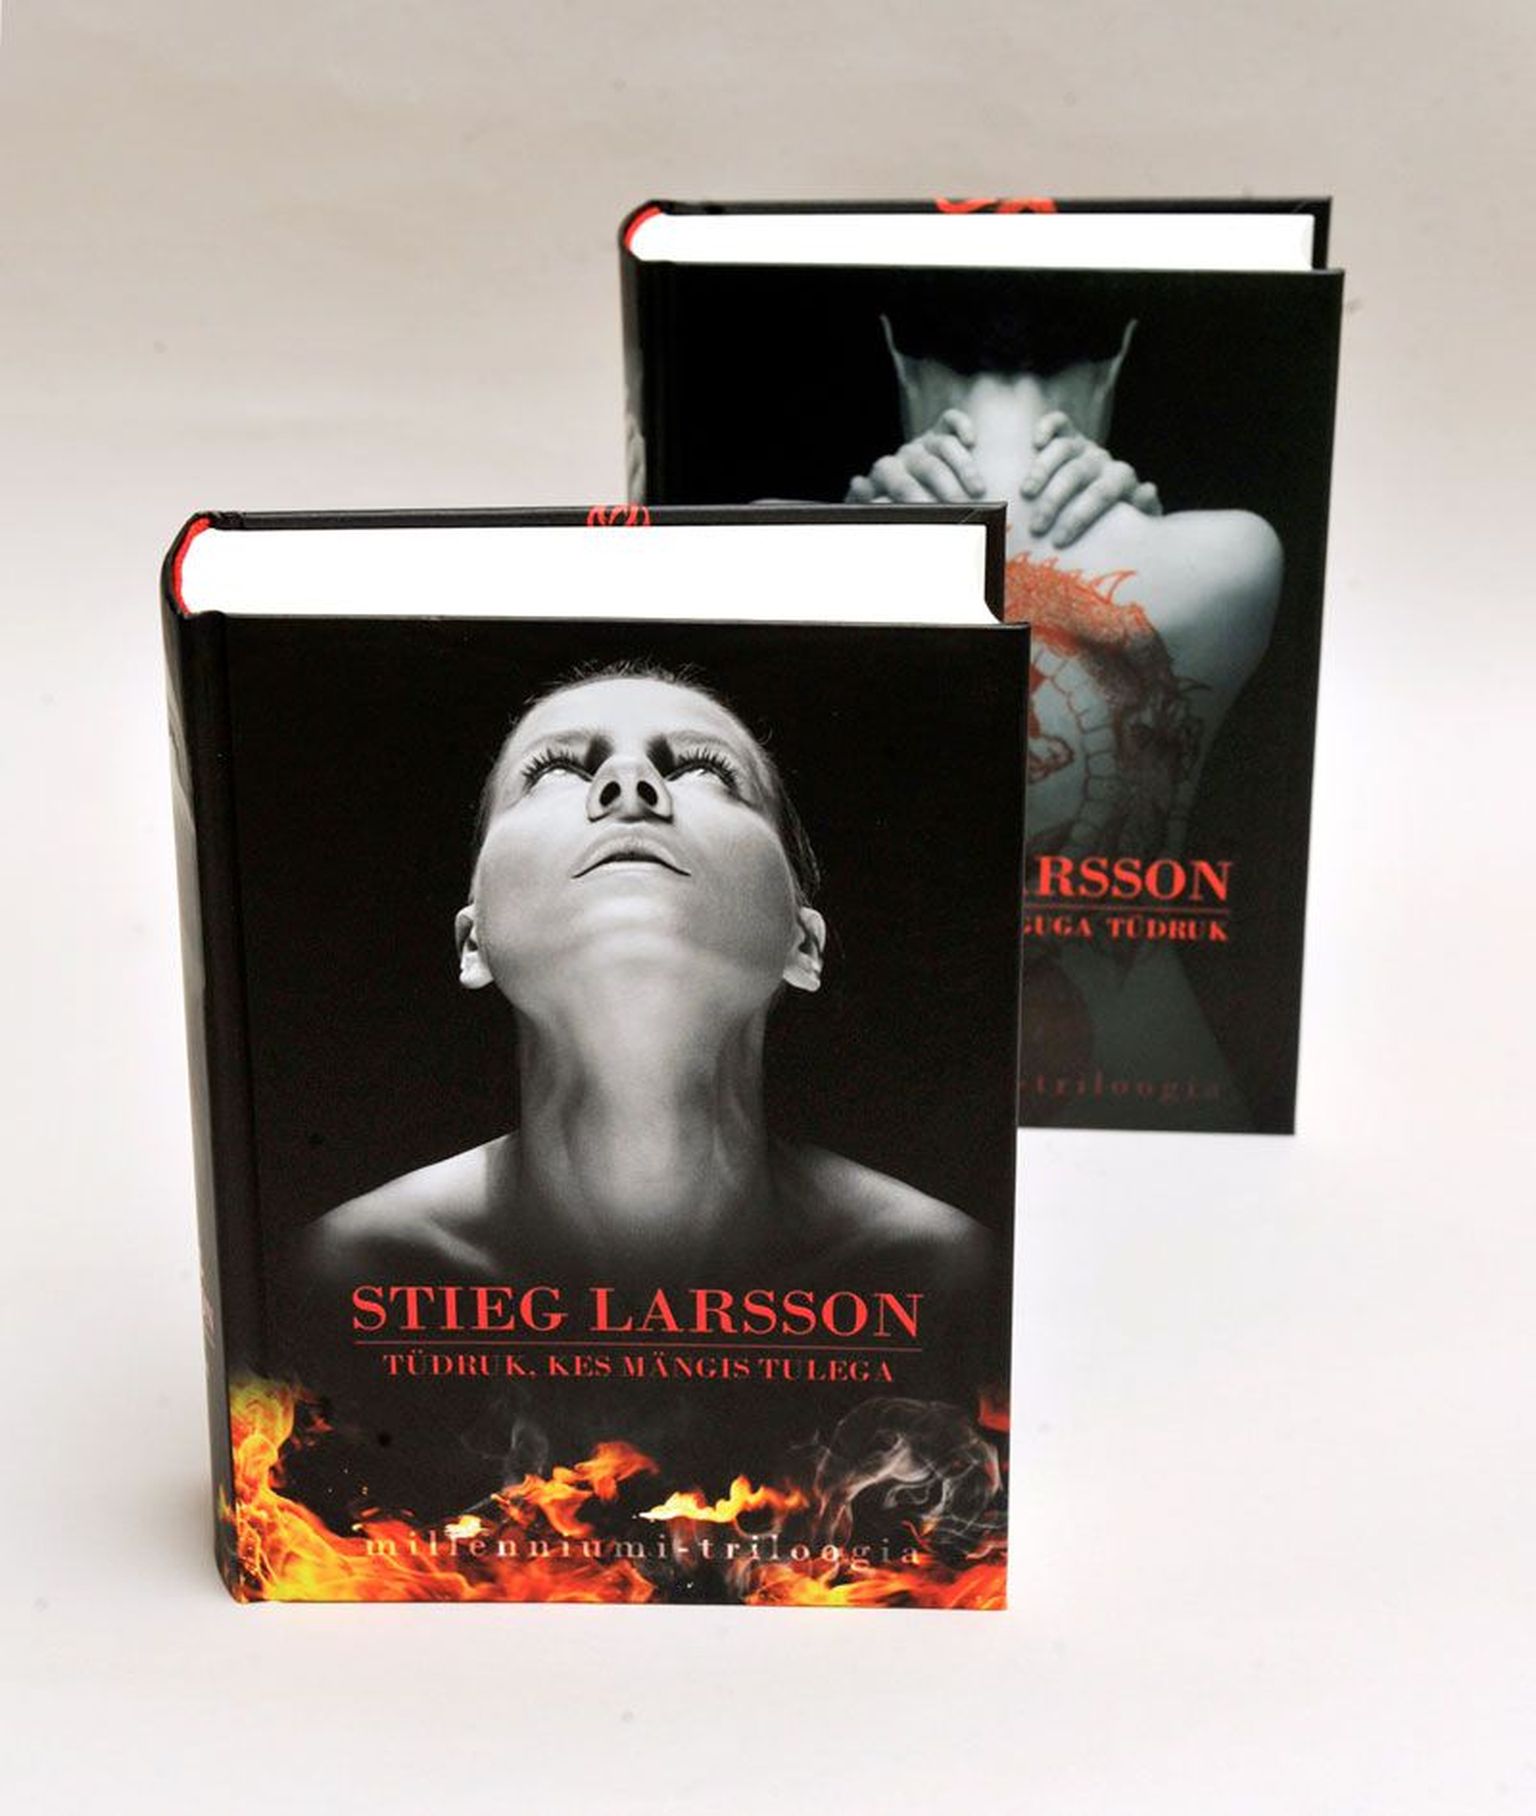 Raamatud
Stieg Larsson
«Tüdruk, kes mängis tulega»
Tõlkinud Kadri Papp
Kirjastus Varrak, 2009

Stieg Larsson 
«Lohetätoveeringuga tüdruk»
Tõlkinud Tõnis Arnover
Kirjastus Varrak, 2009